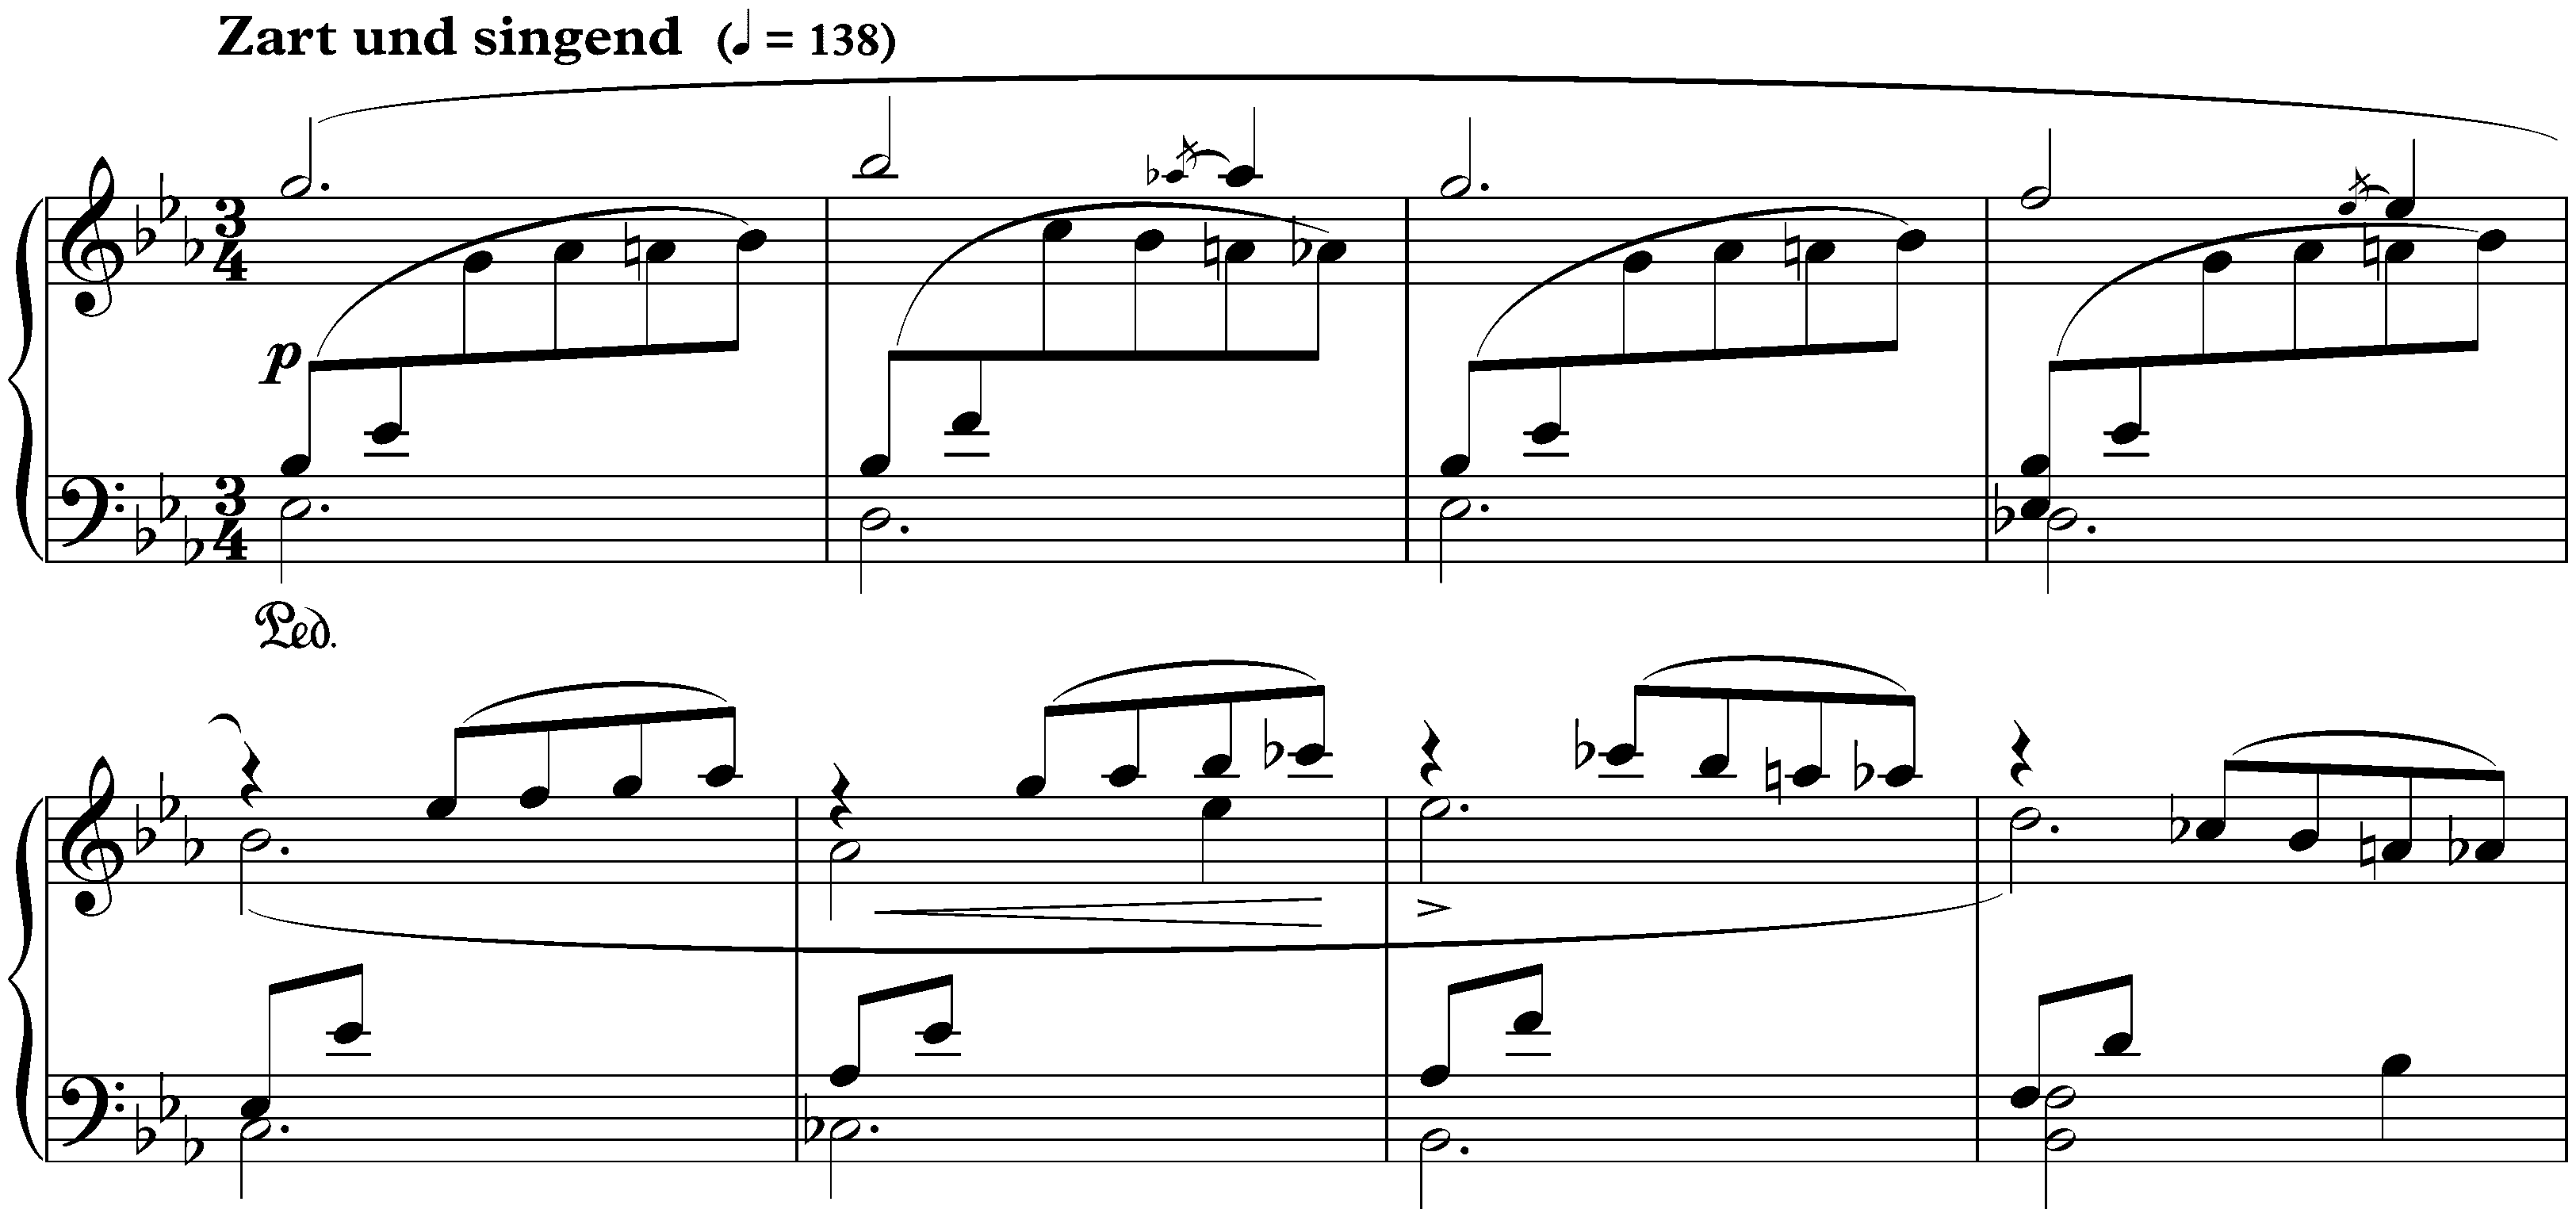 Davidsbündlertänze, op. 6; 14. Zart und singend